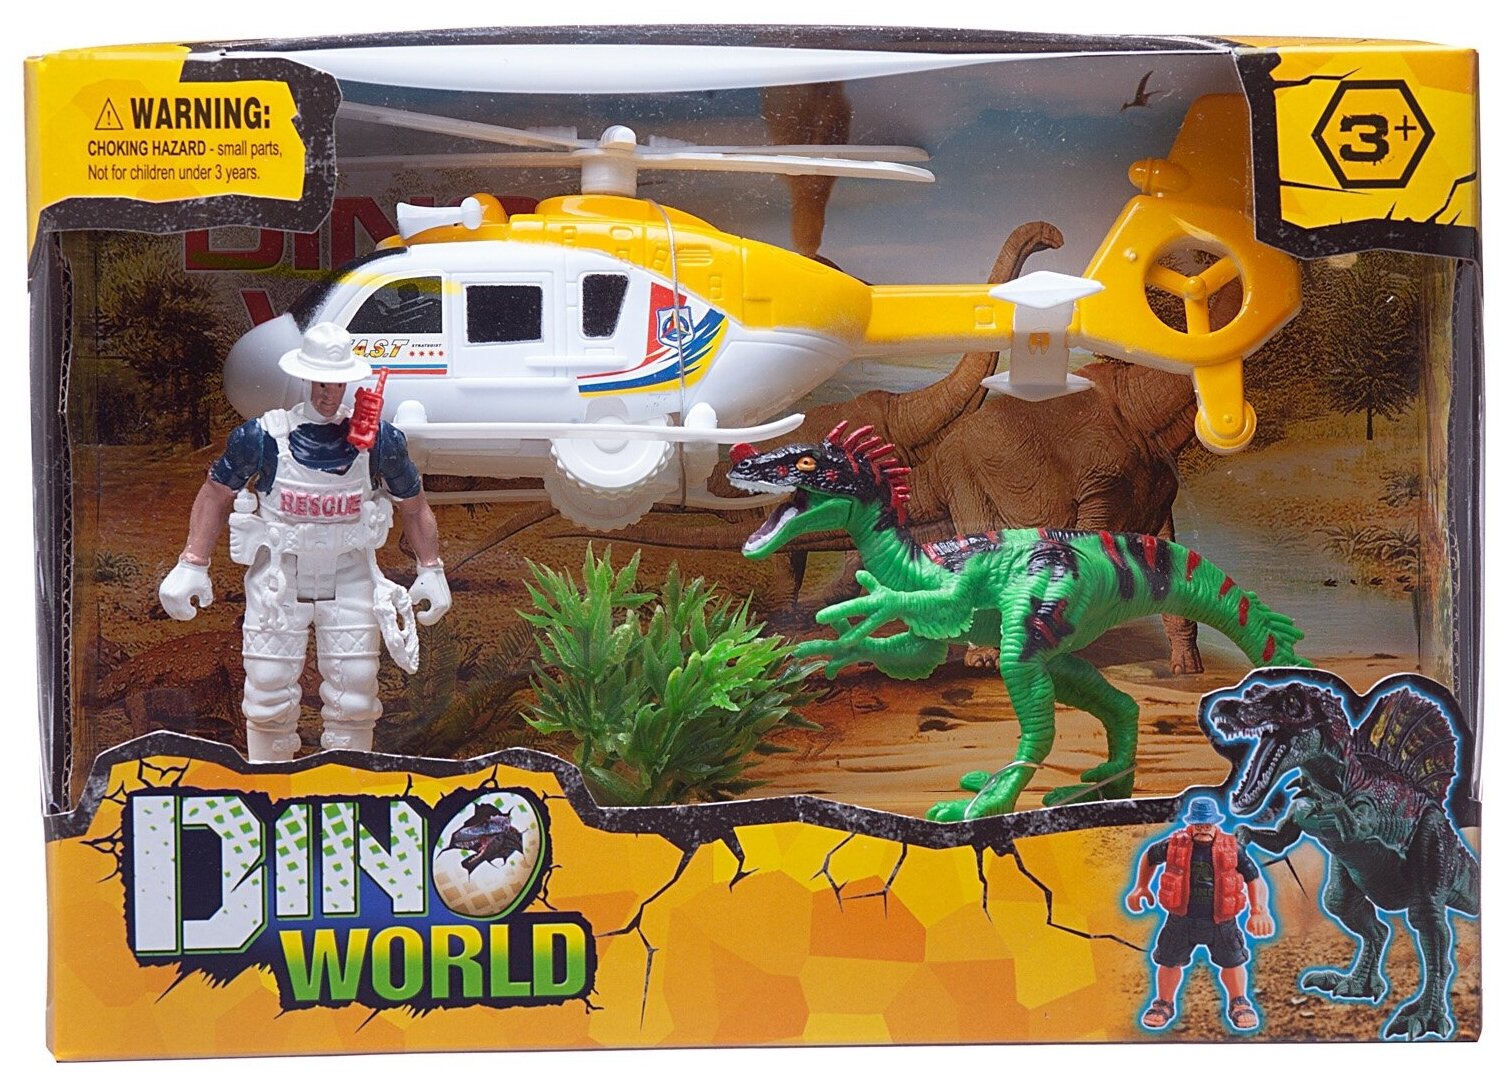 Набор игровой Мир динозавров (динозавр, вертолет, фигурка человека, акссесуары), в коробке - Junfa Toys [WA-14249]